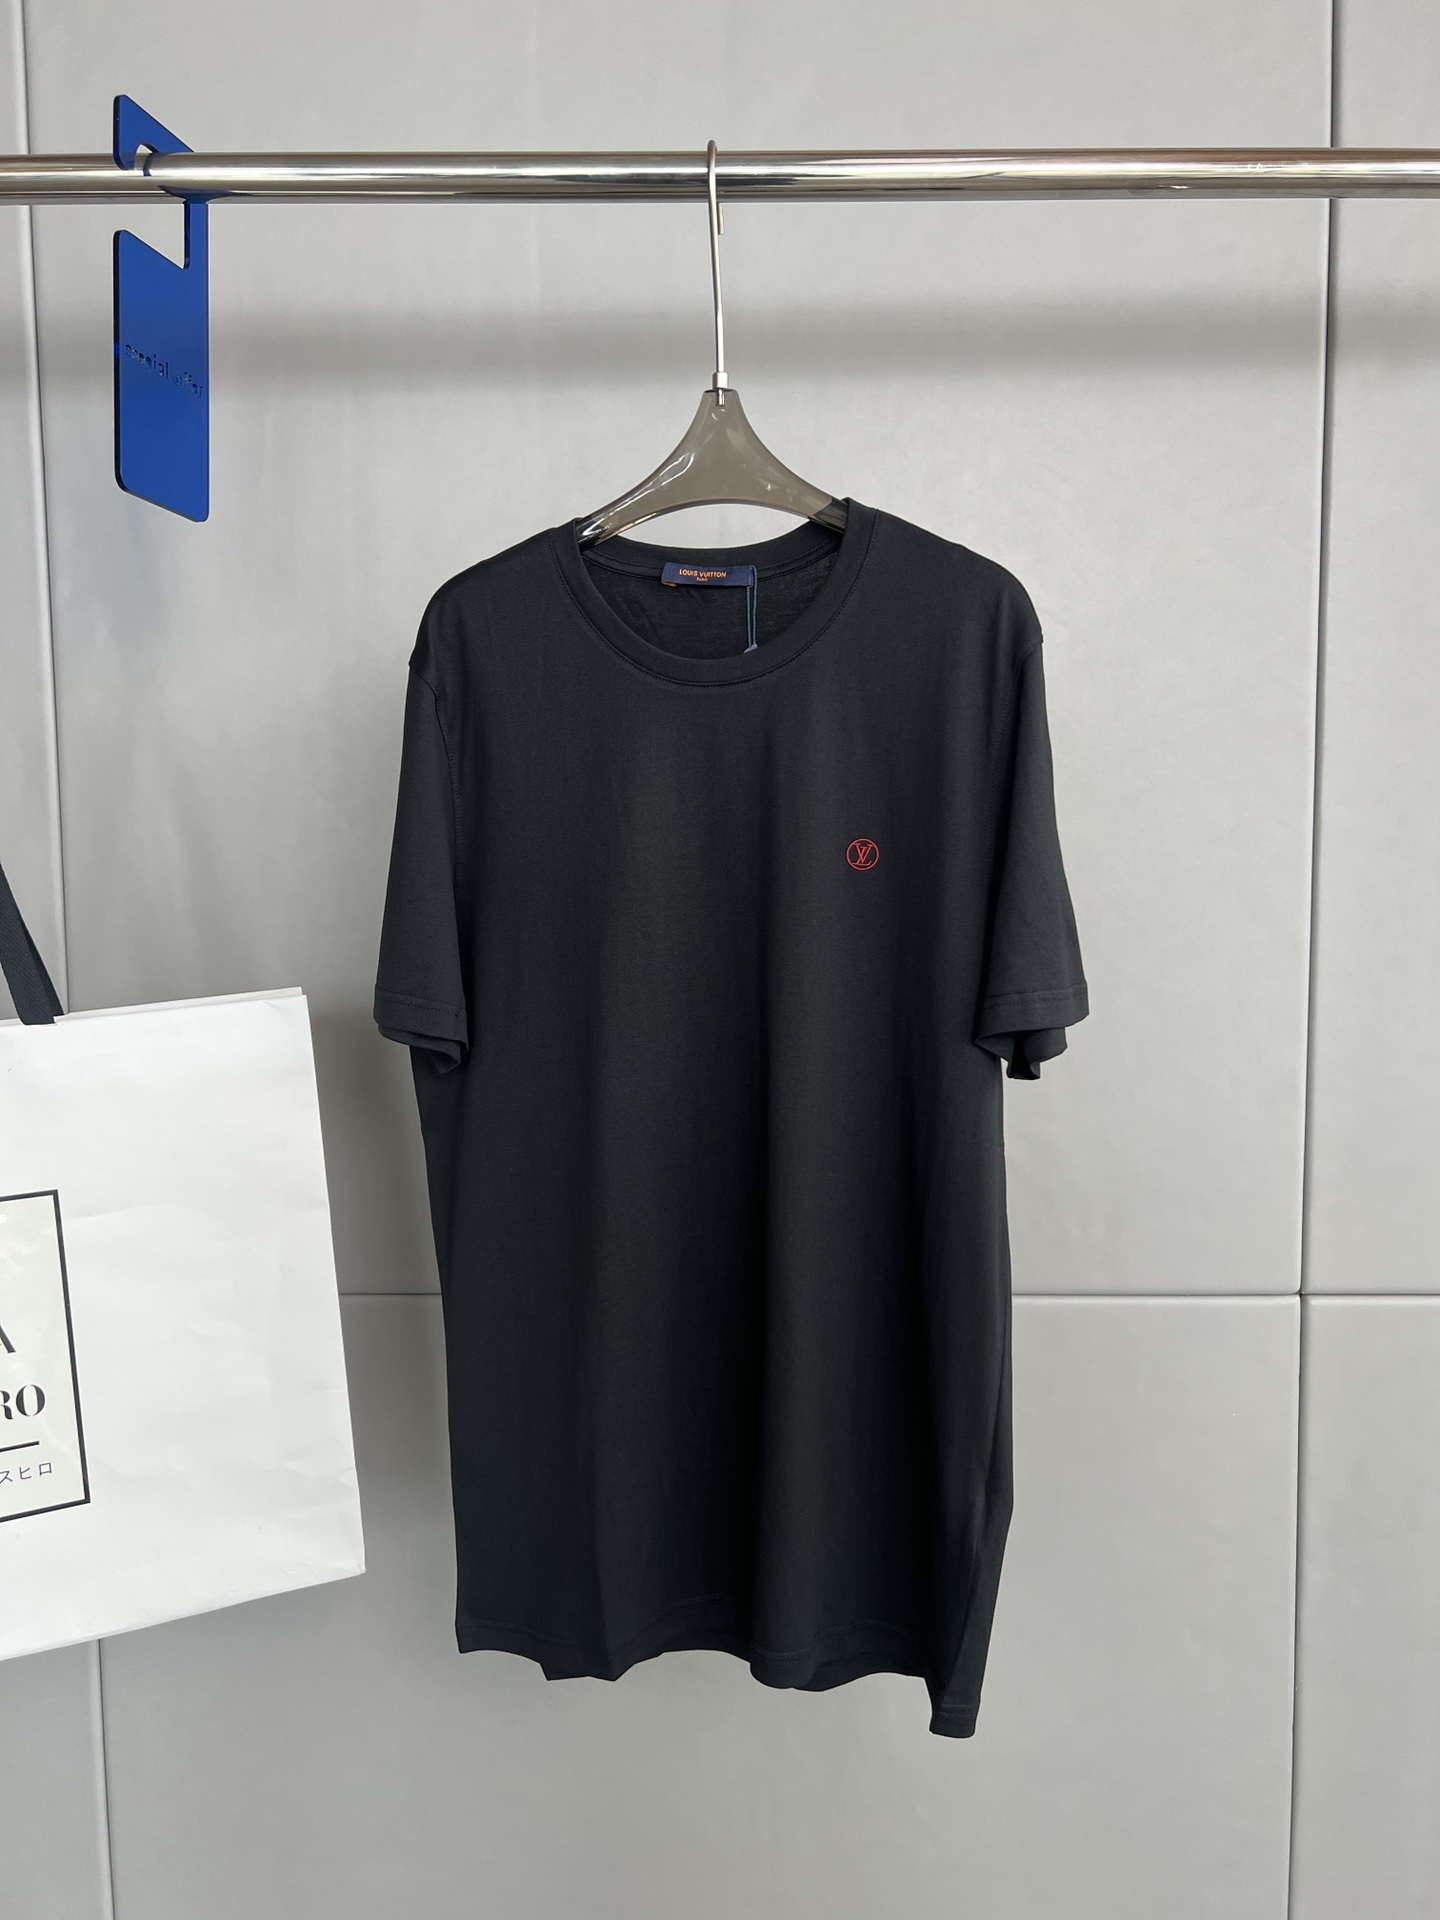 Louis Vuitto*n LV 路易威登 夏季新款 男士刺绣圆领短袖T恤、胸前品牌标志性刺绣、100%纯棉、面料舒适\n码数S- XL